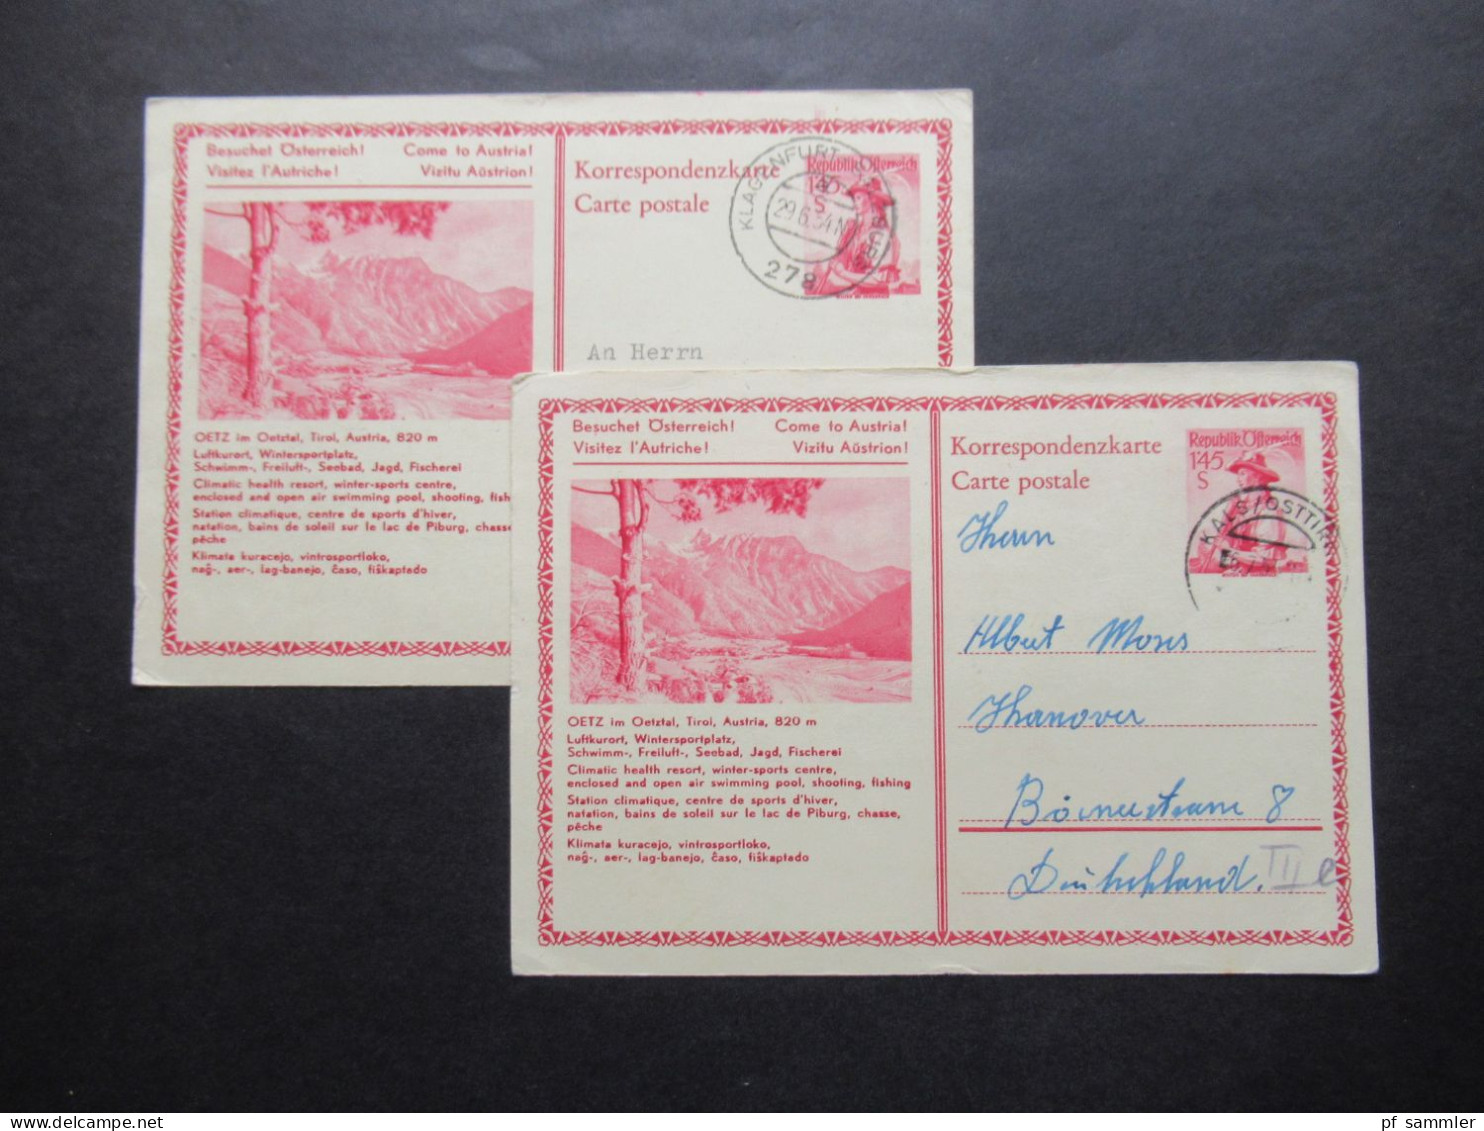 Österreich 1954 2x Bildganzsache Oetz Im Oetztal 1x Mit Stempel Verkehrsverein Kals Osttirol Beide Nach Hannover Gesend - Cartes Postales